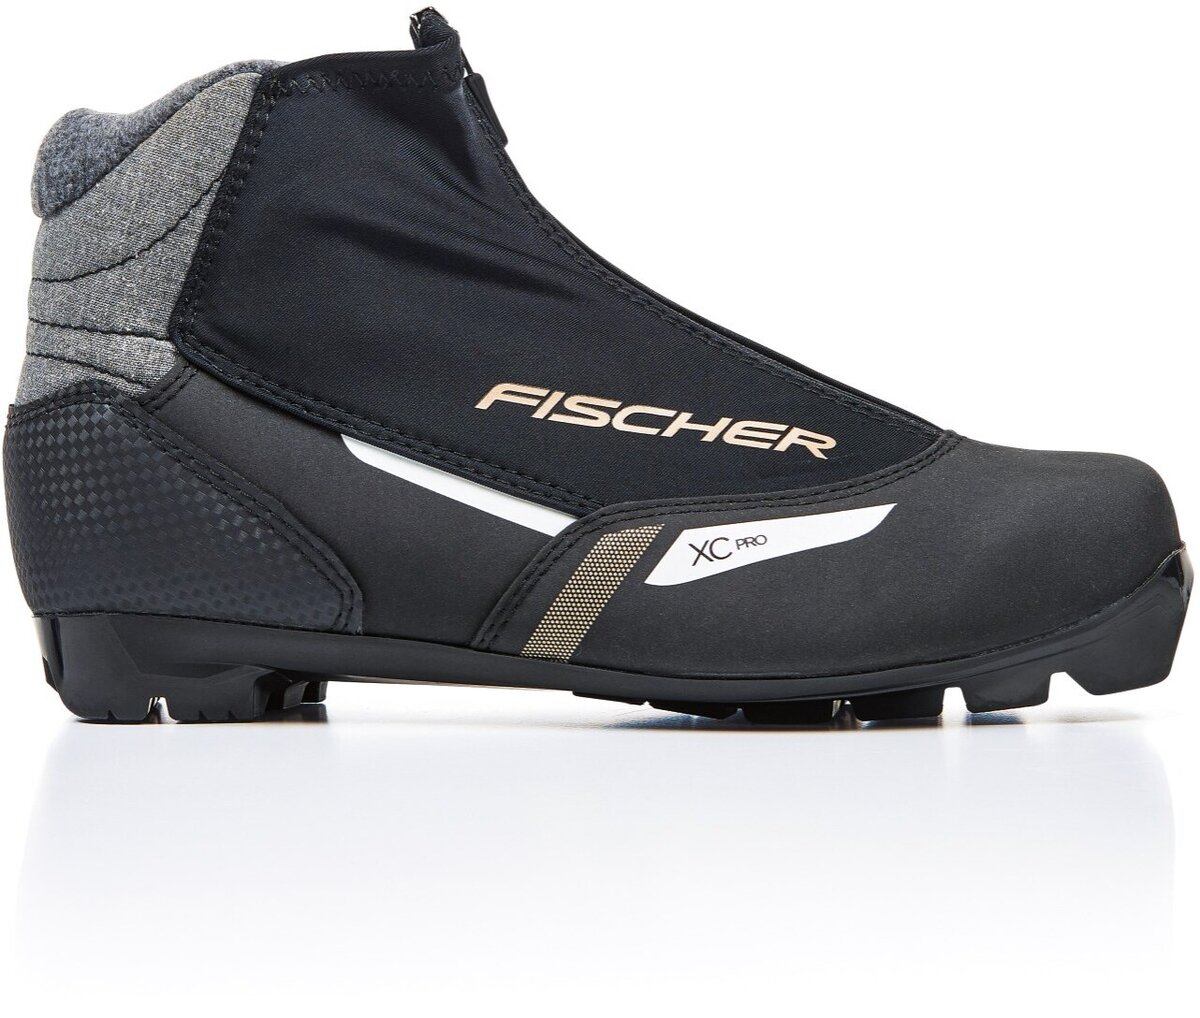 Fischer XC Pro XC Ski Boots Mens